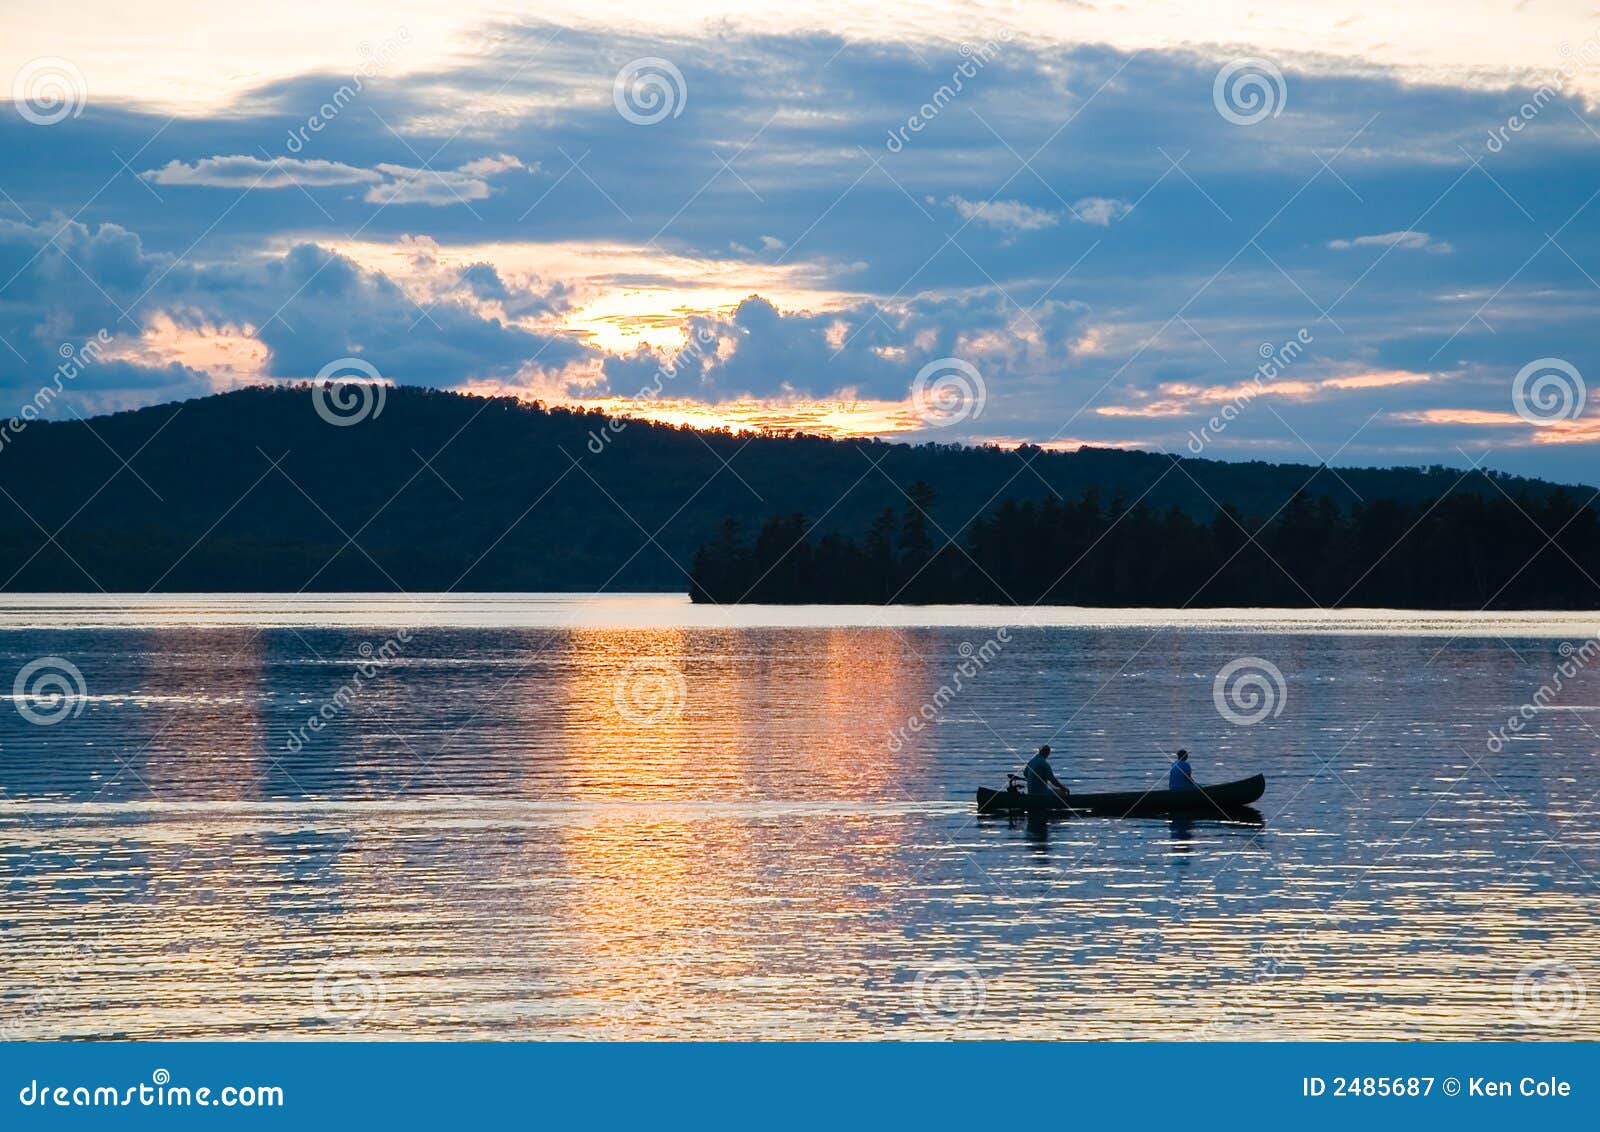 canoe on lake at sunset